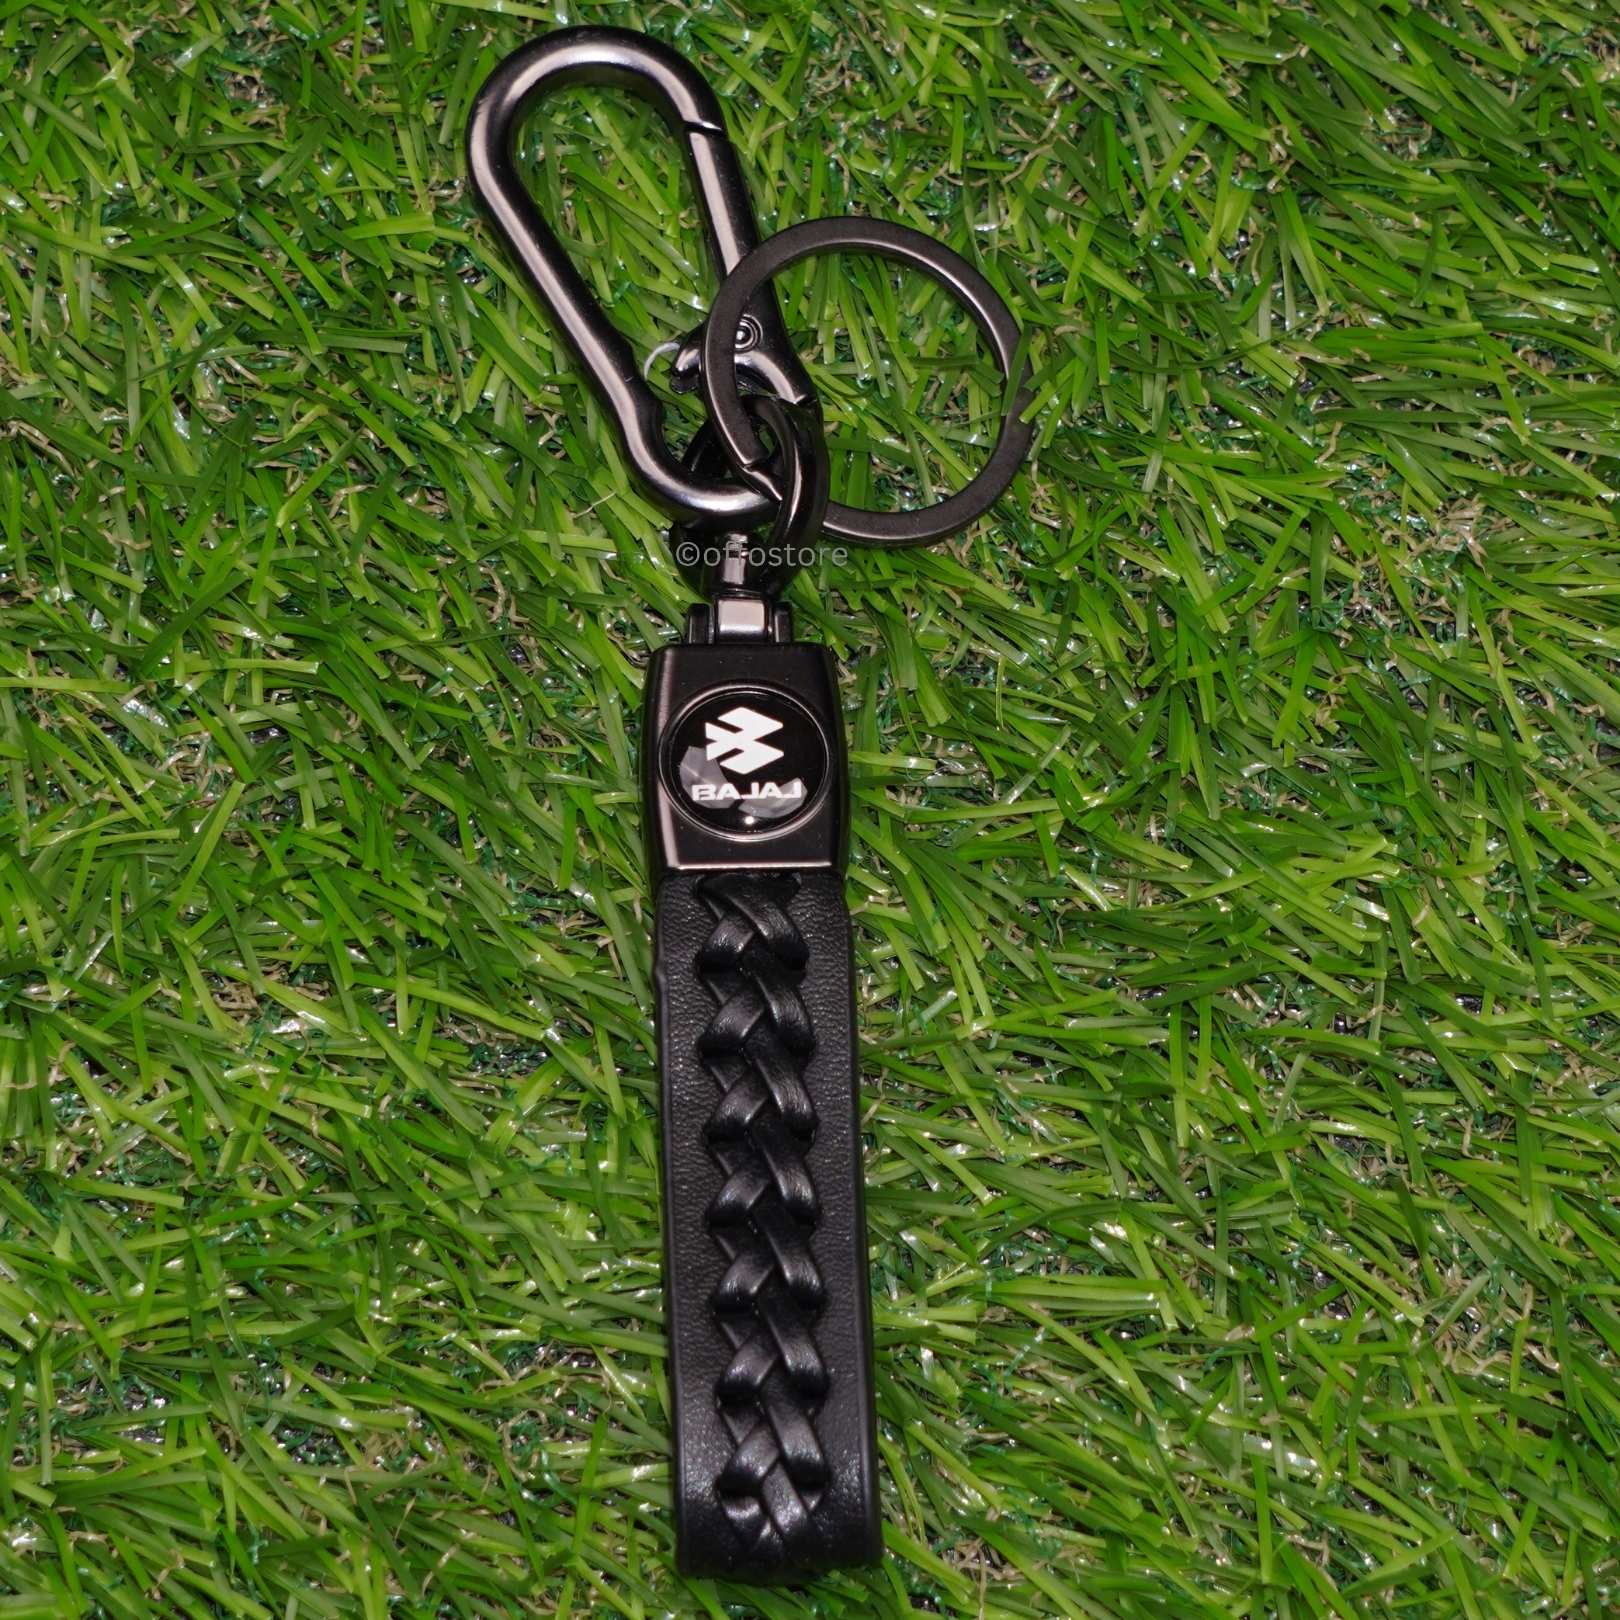 Bajaj Leather Keychain